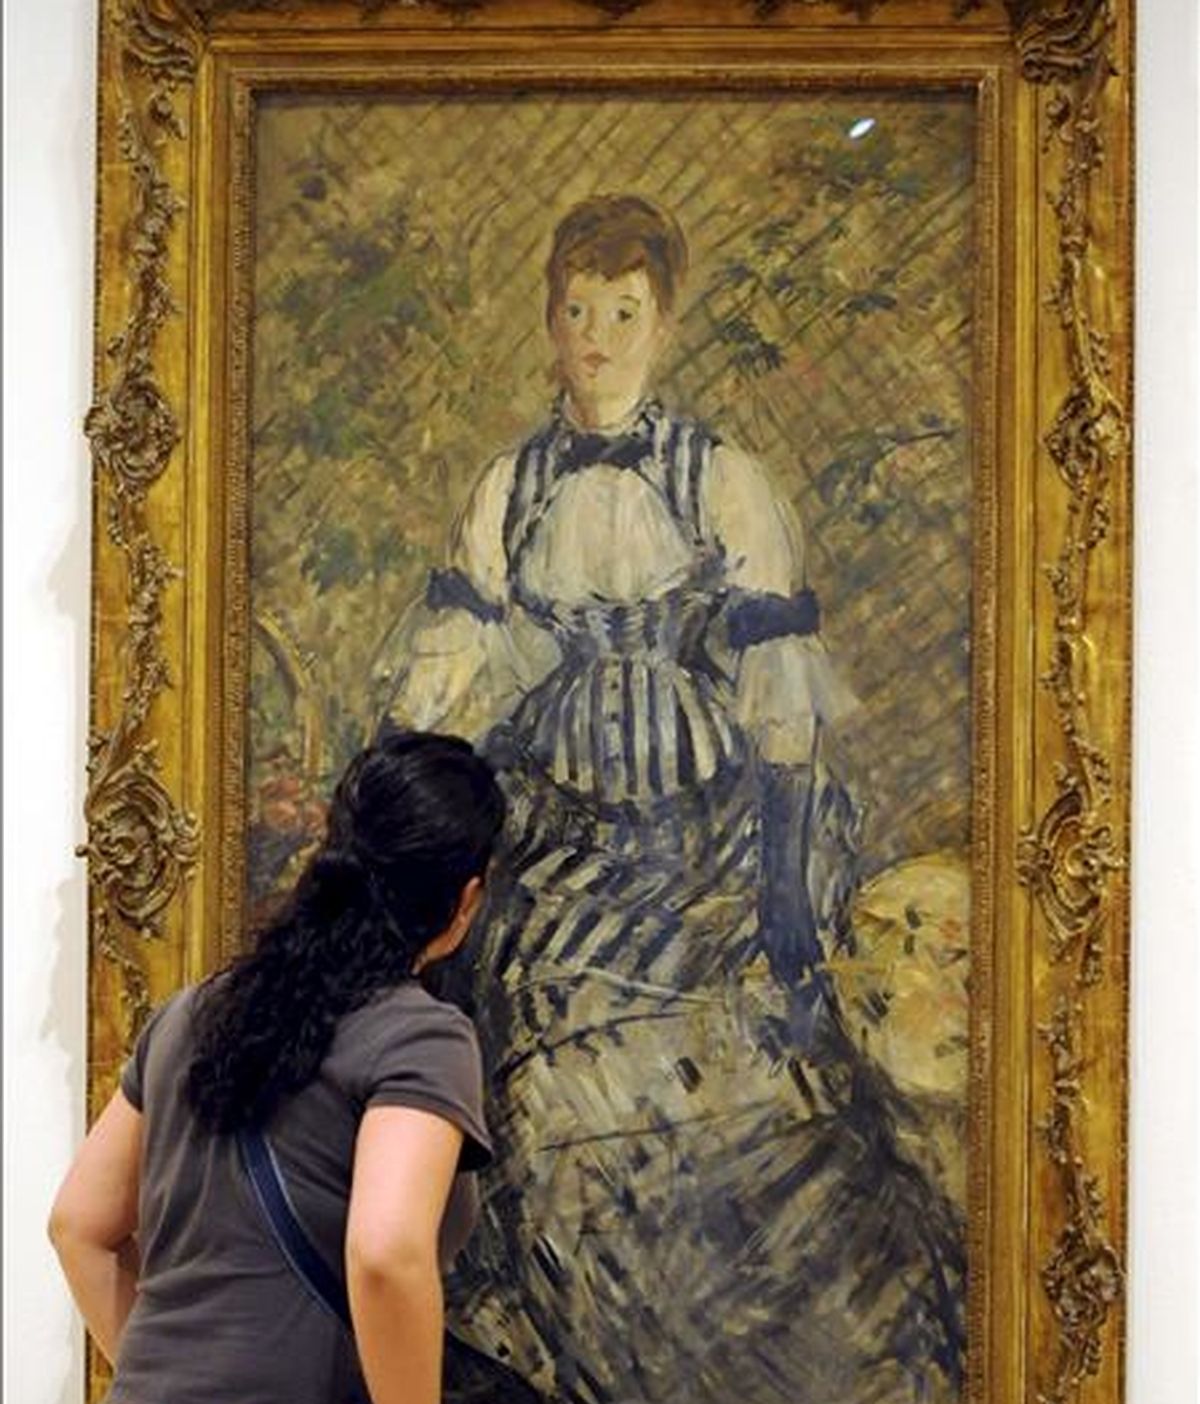 Una mujer observa la pintura "Dama en traje de noche", 1877-80, de Edouard Manet, de la exposición "De lo privado a lo público: las colecciones Guggenheim", una muestra que refleja en un centenar de obras la evolución de la colección permanente de la Fundación Solomon R.Guggenheim. EFE